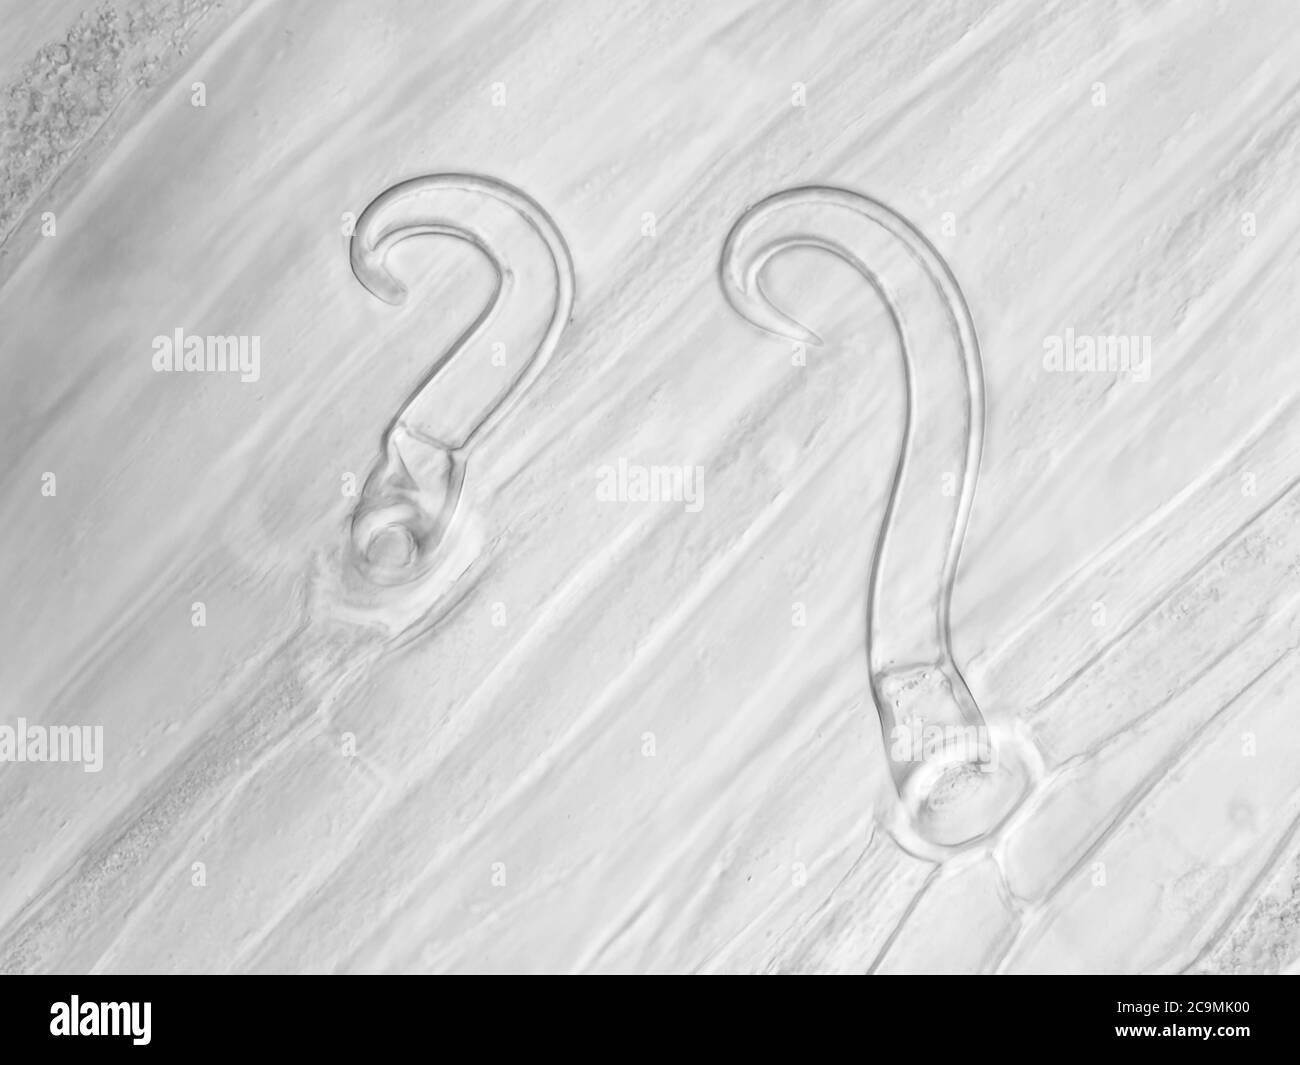 Feuille de haricot blanchi (Phaseolus vulgaris) avec trichomes sous le microscope, champ de vision horizontal est d'environ 0,24 mm Banque D'Images